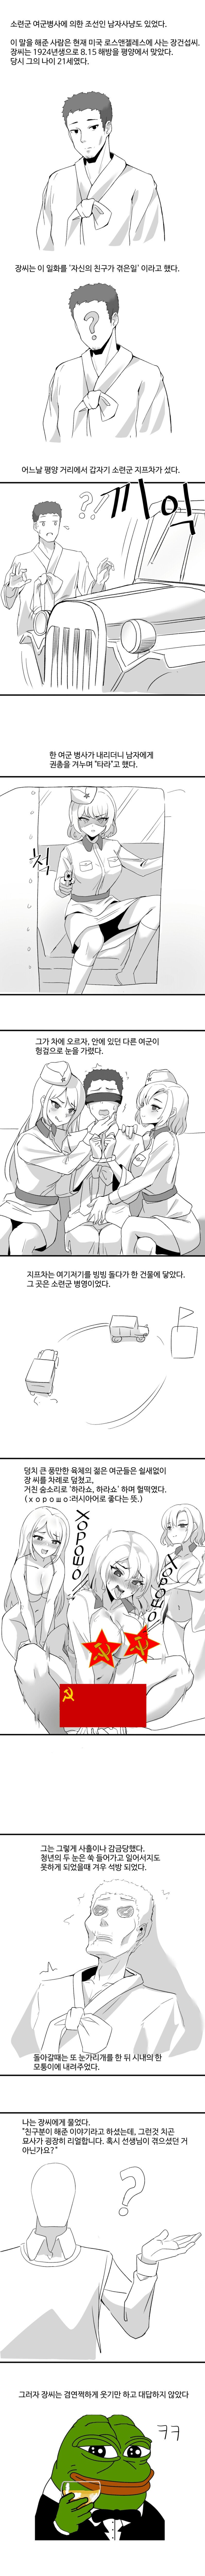 조선남자사냥 만화.jpg